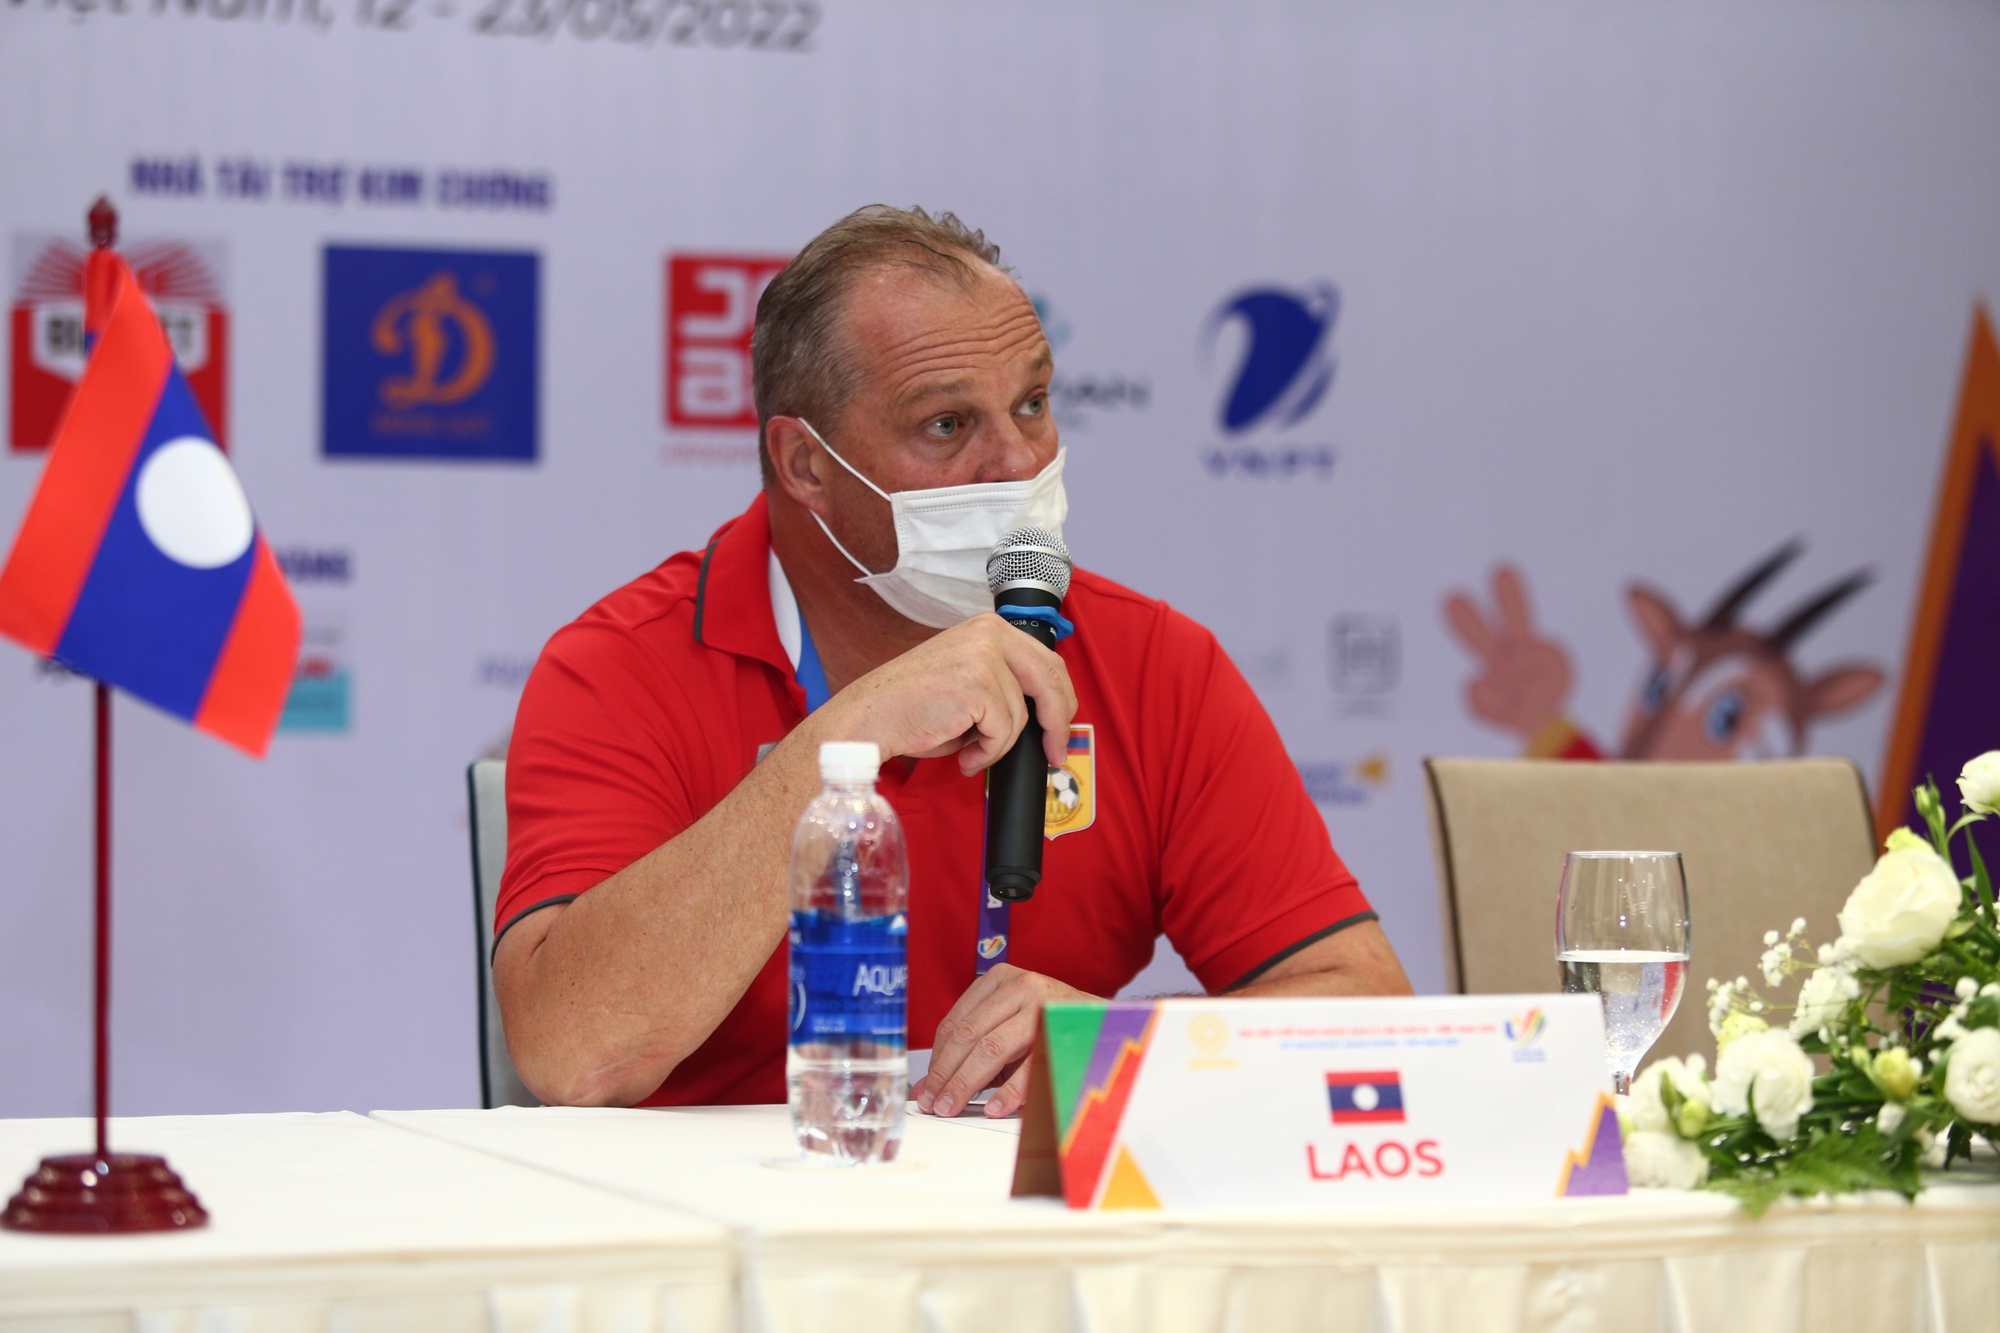 HLV U23 Lào: &quot;Chúng tôi muốn vào vòng loại thứ 2 World Cup 2026&quot; - Ảnh 1.